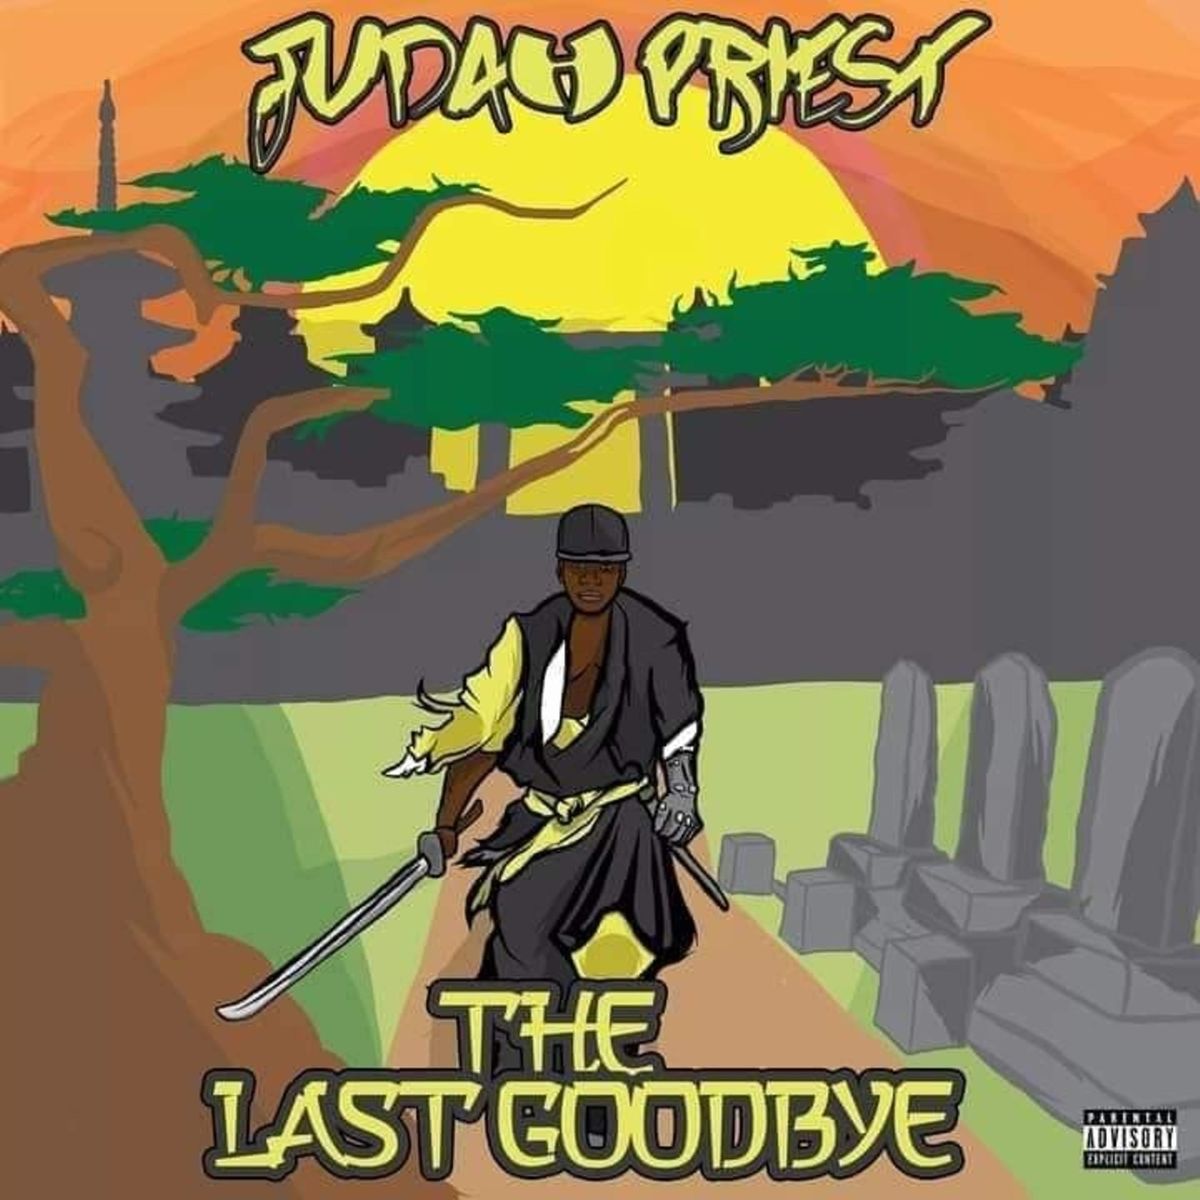 Judah Priest - The Last Good Bye Album Release Party